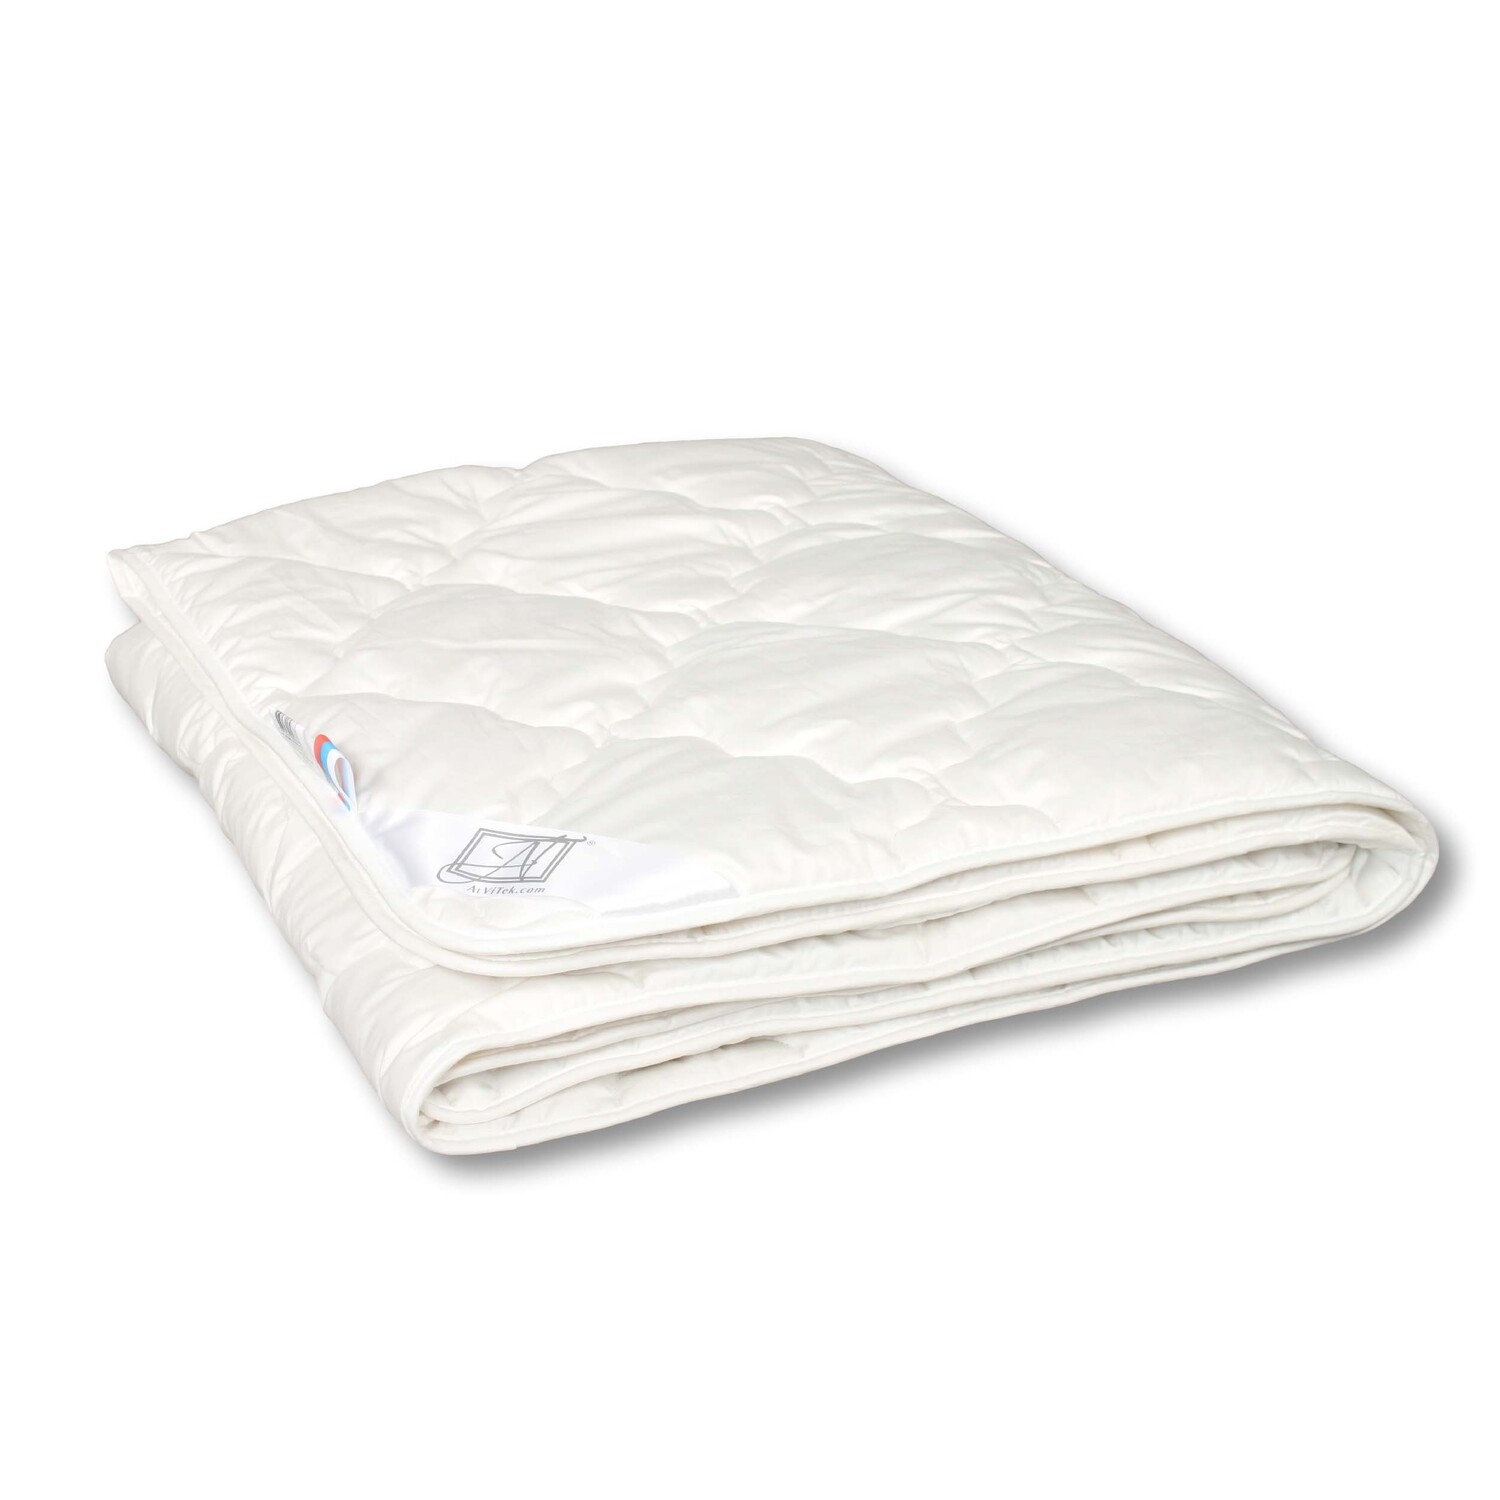 Одеяло Mexico Легкое (172X205 см), размер 172х205 см, цвет белый iff35241 Одеяло Mexico Легкое (172X205 см) - фото 1